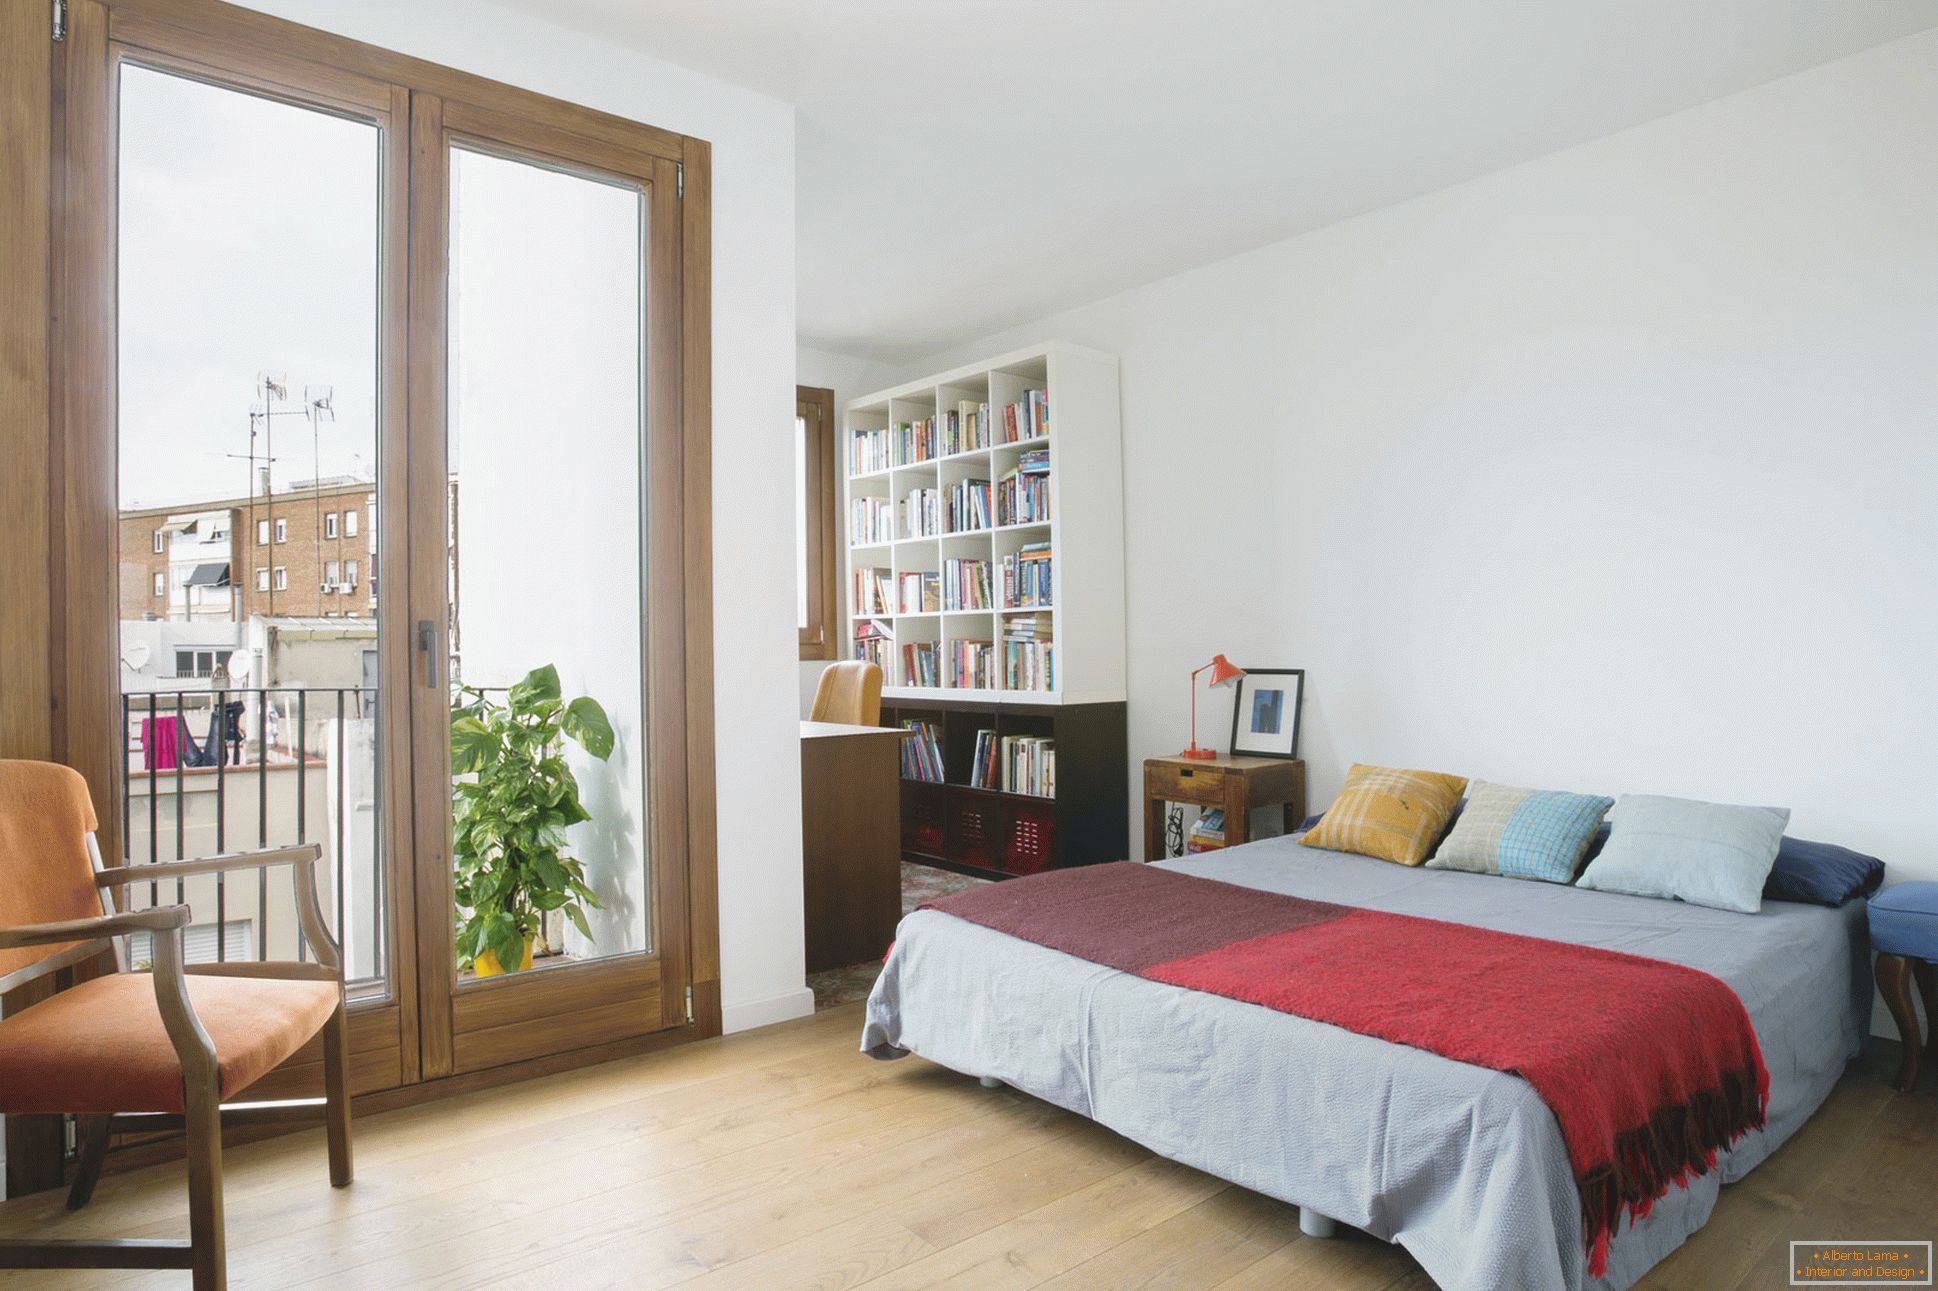 Dizajn interijera malog stana u Barceloni